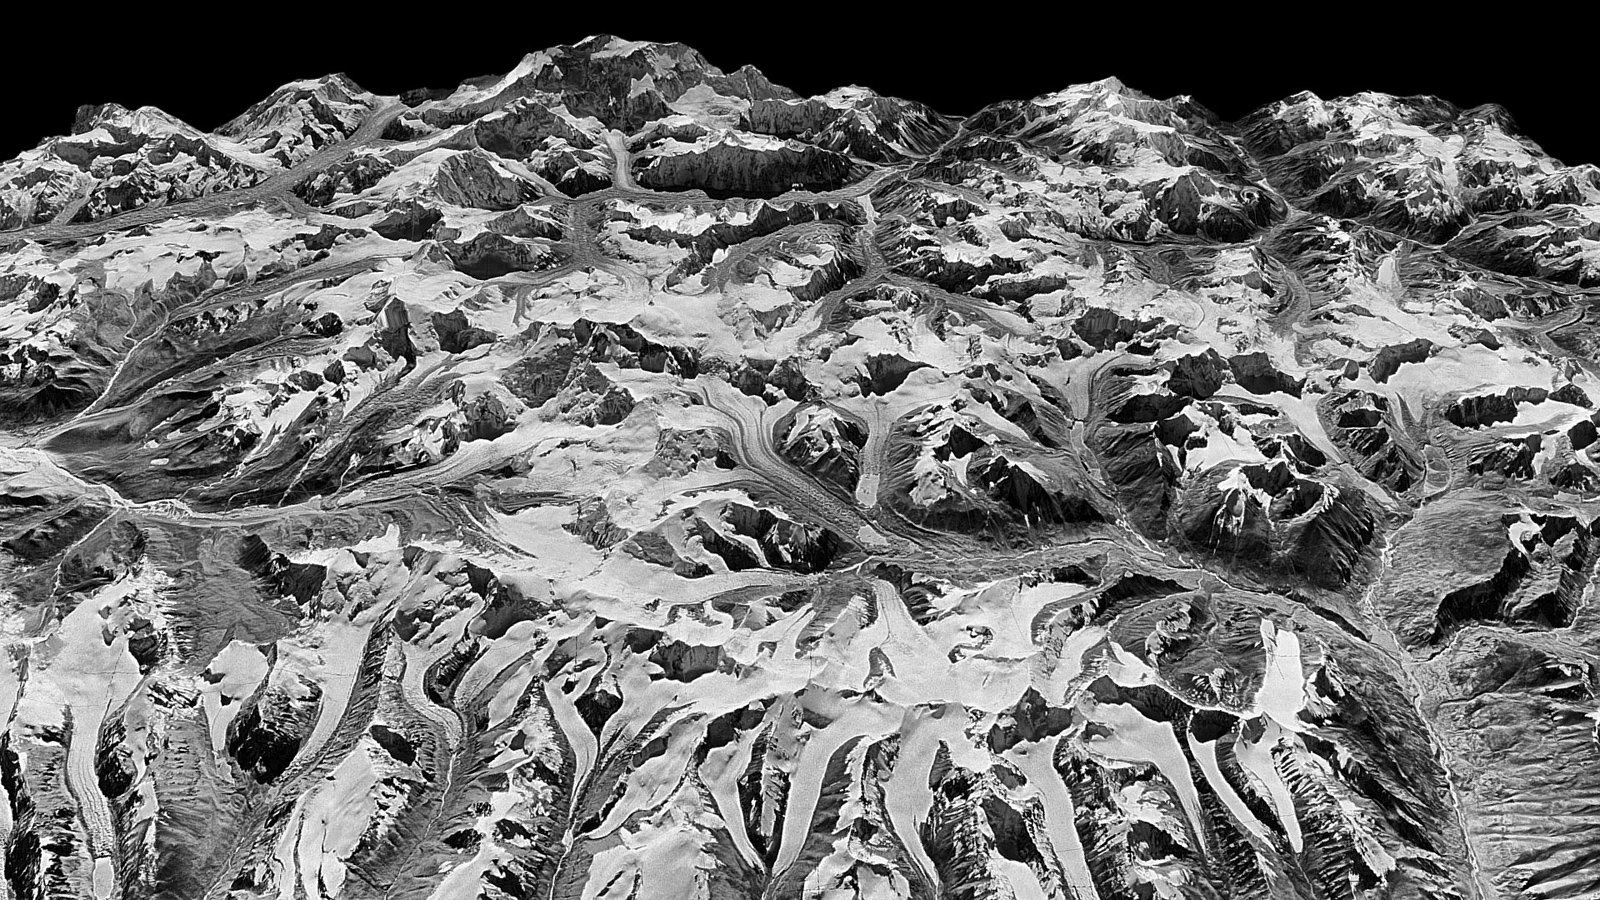 ภาพถ่ายดาวเทียมเผย! หิมะบนเทือกเขาหิมาลัยละลายอย่างต่อเนื่องตลอด 40 ปีที่ผ่านมา